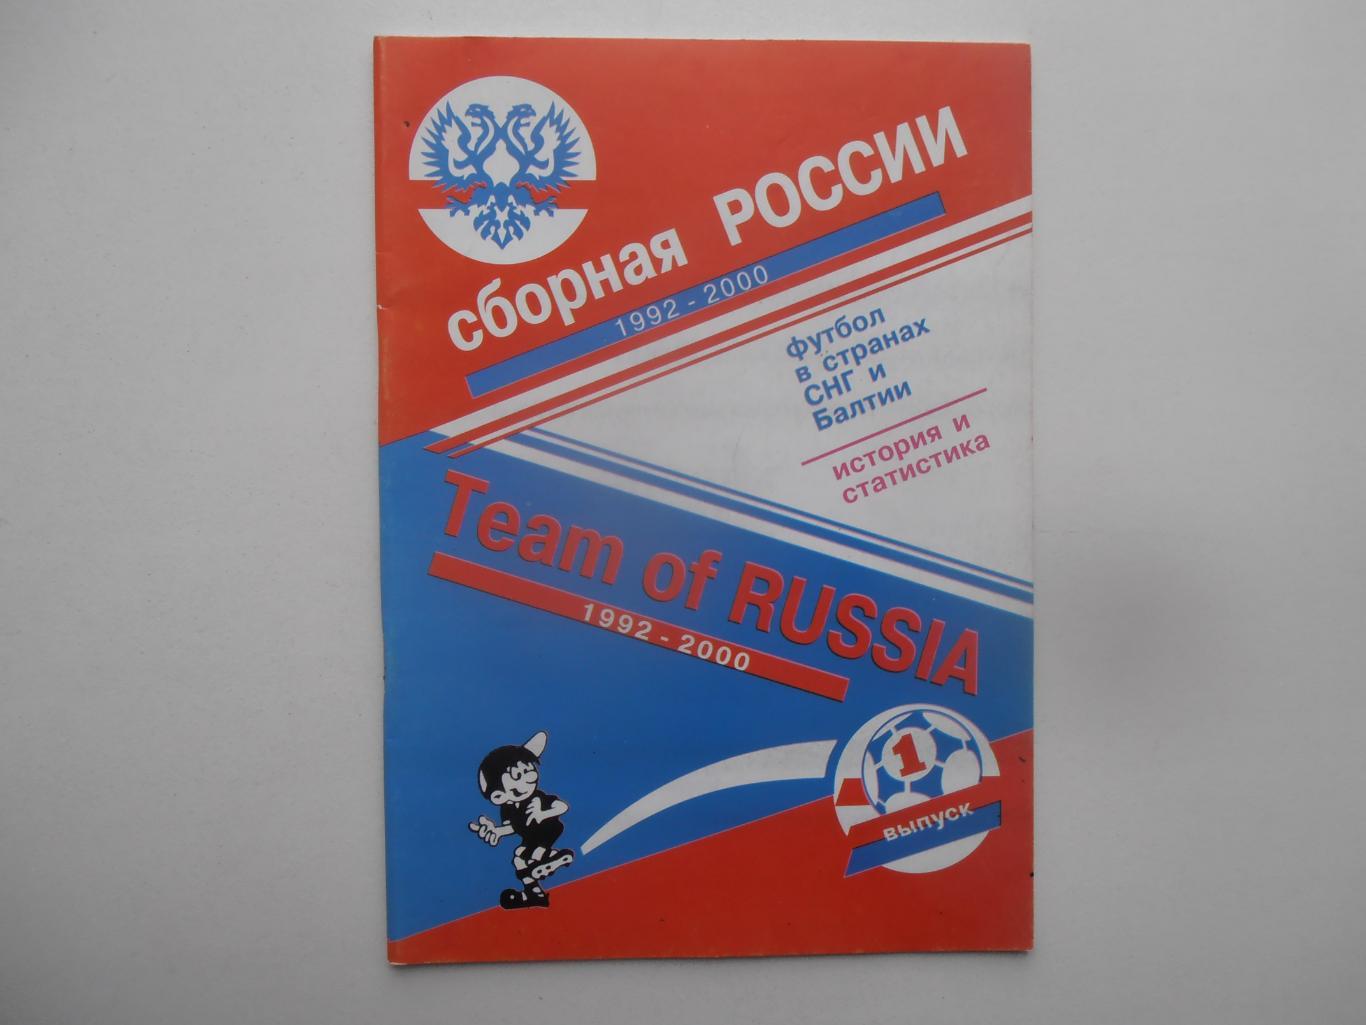 Сборная России 1992-2000